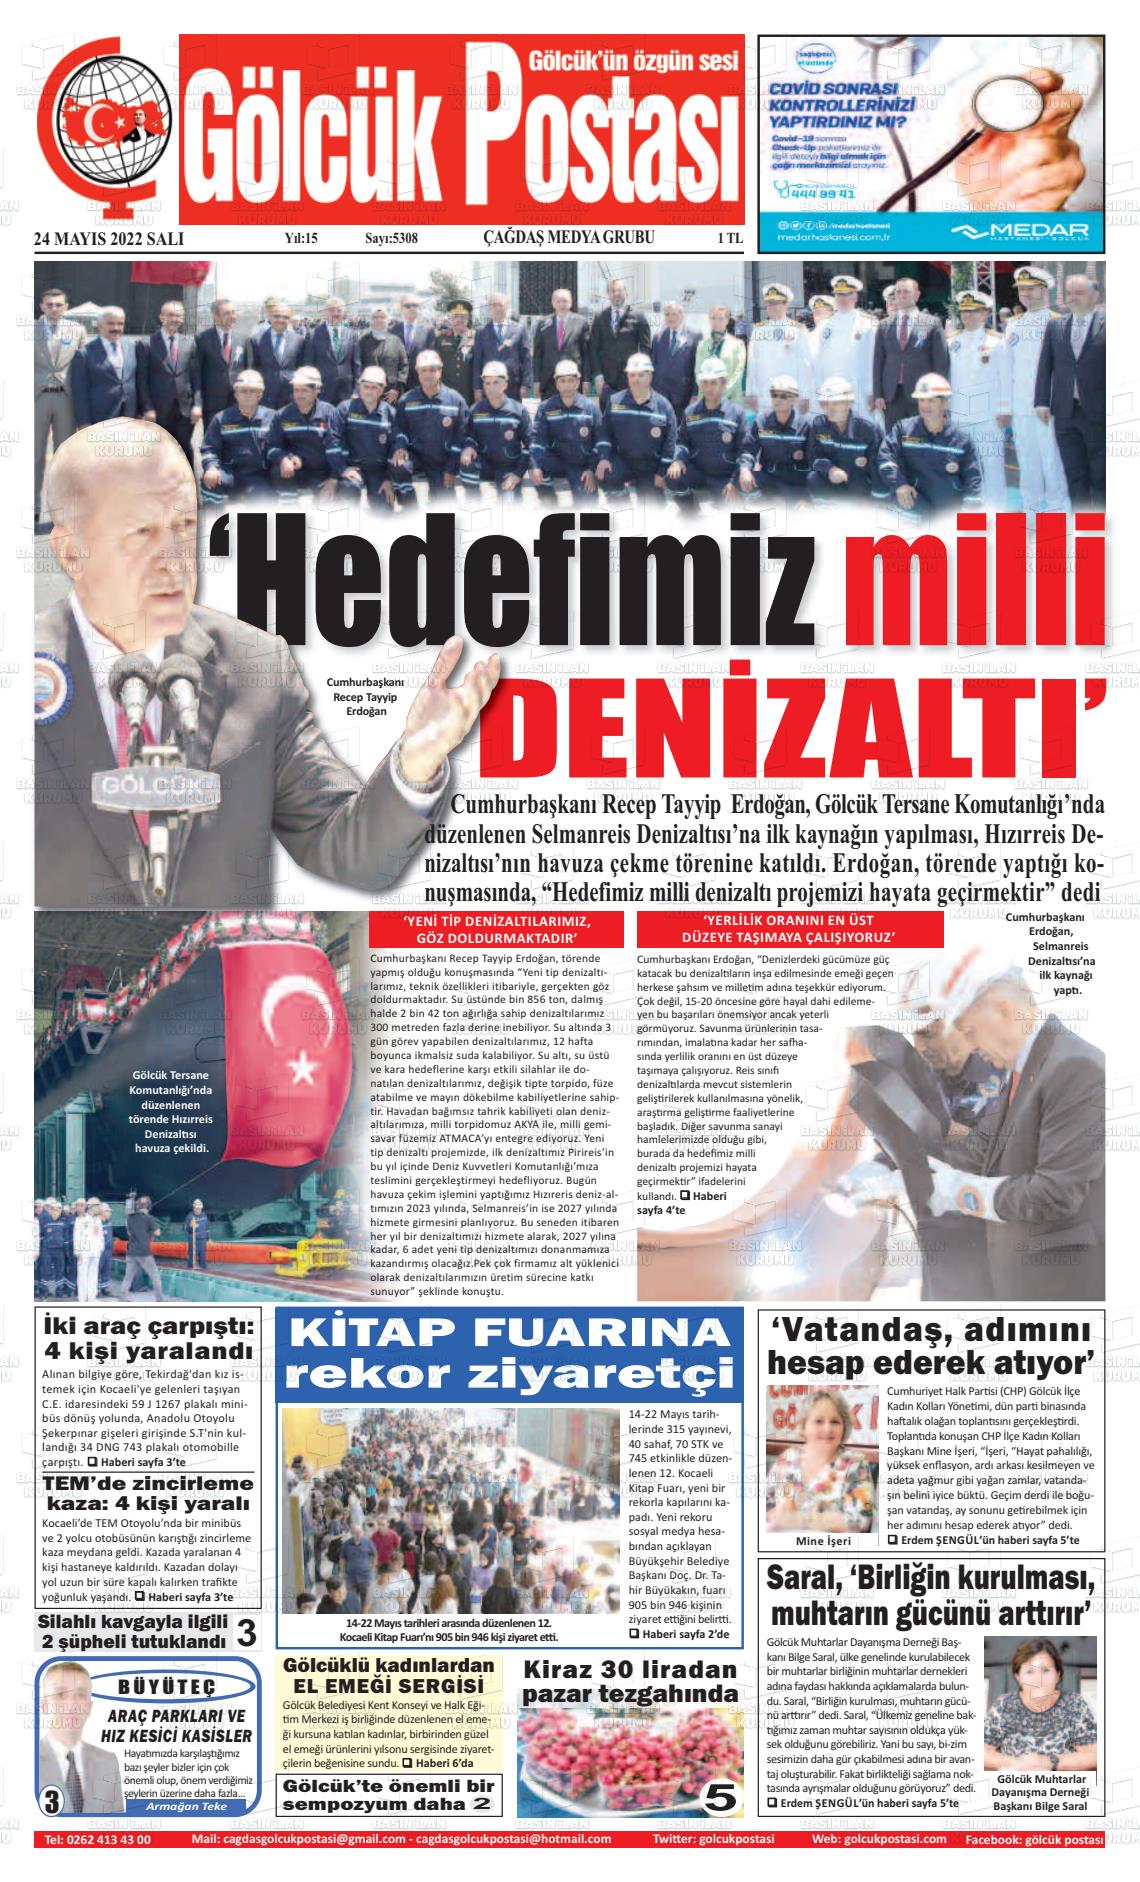 24 Mayıs 2022 Gölcük Postasi Gazete Manşeti